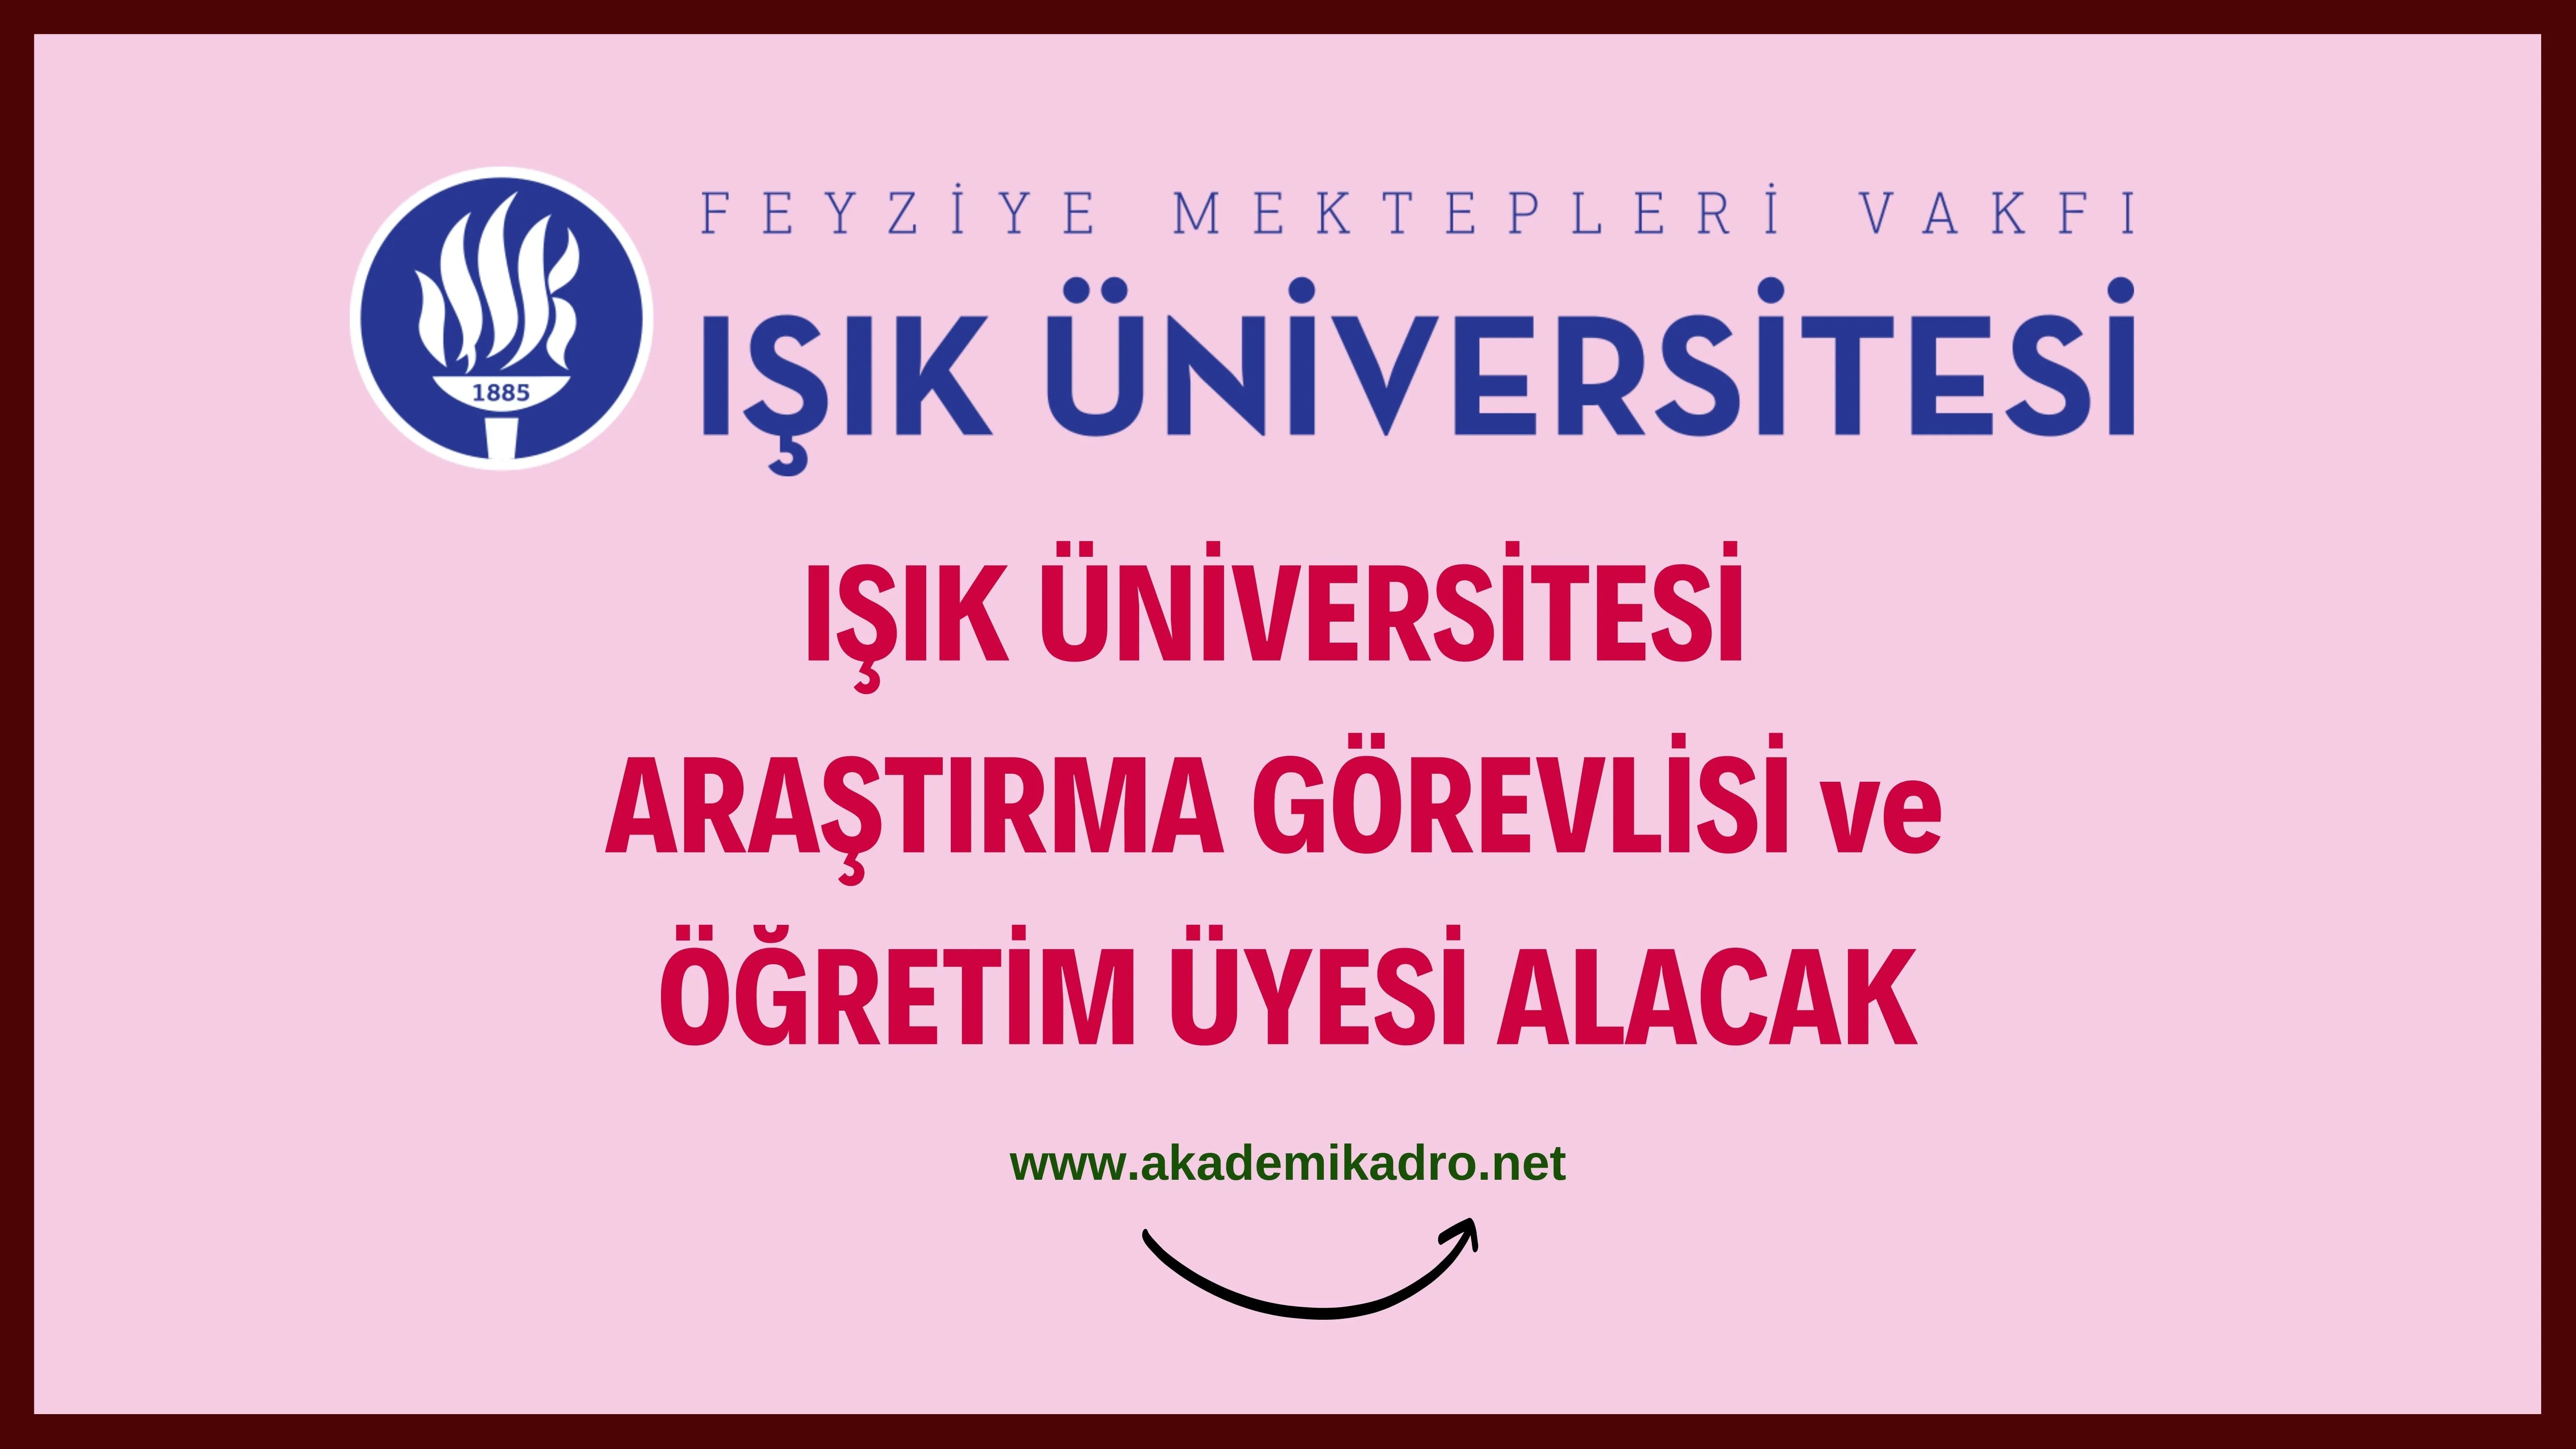 Işık Üniversitesi 1 Profesör, 9 Doktor Öğretim Üyesi, 1 Öğretim Görevlisi ve 2 Araştırma Görevlisi olmak üzere 13 Akademik Personel Alacak